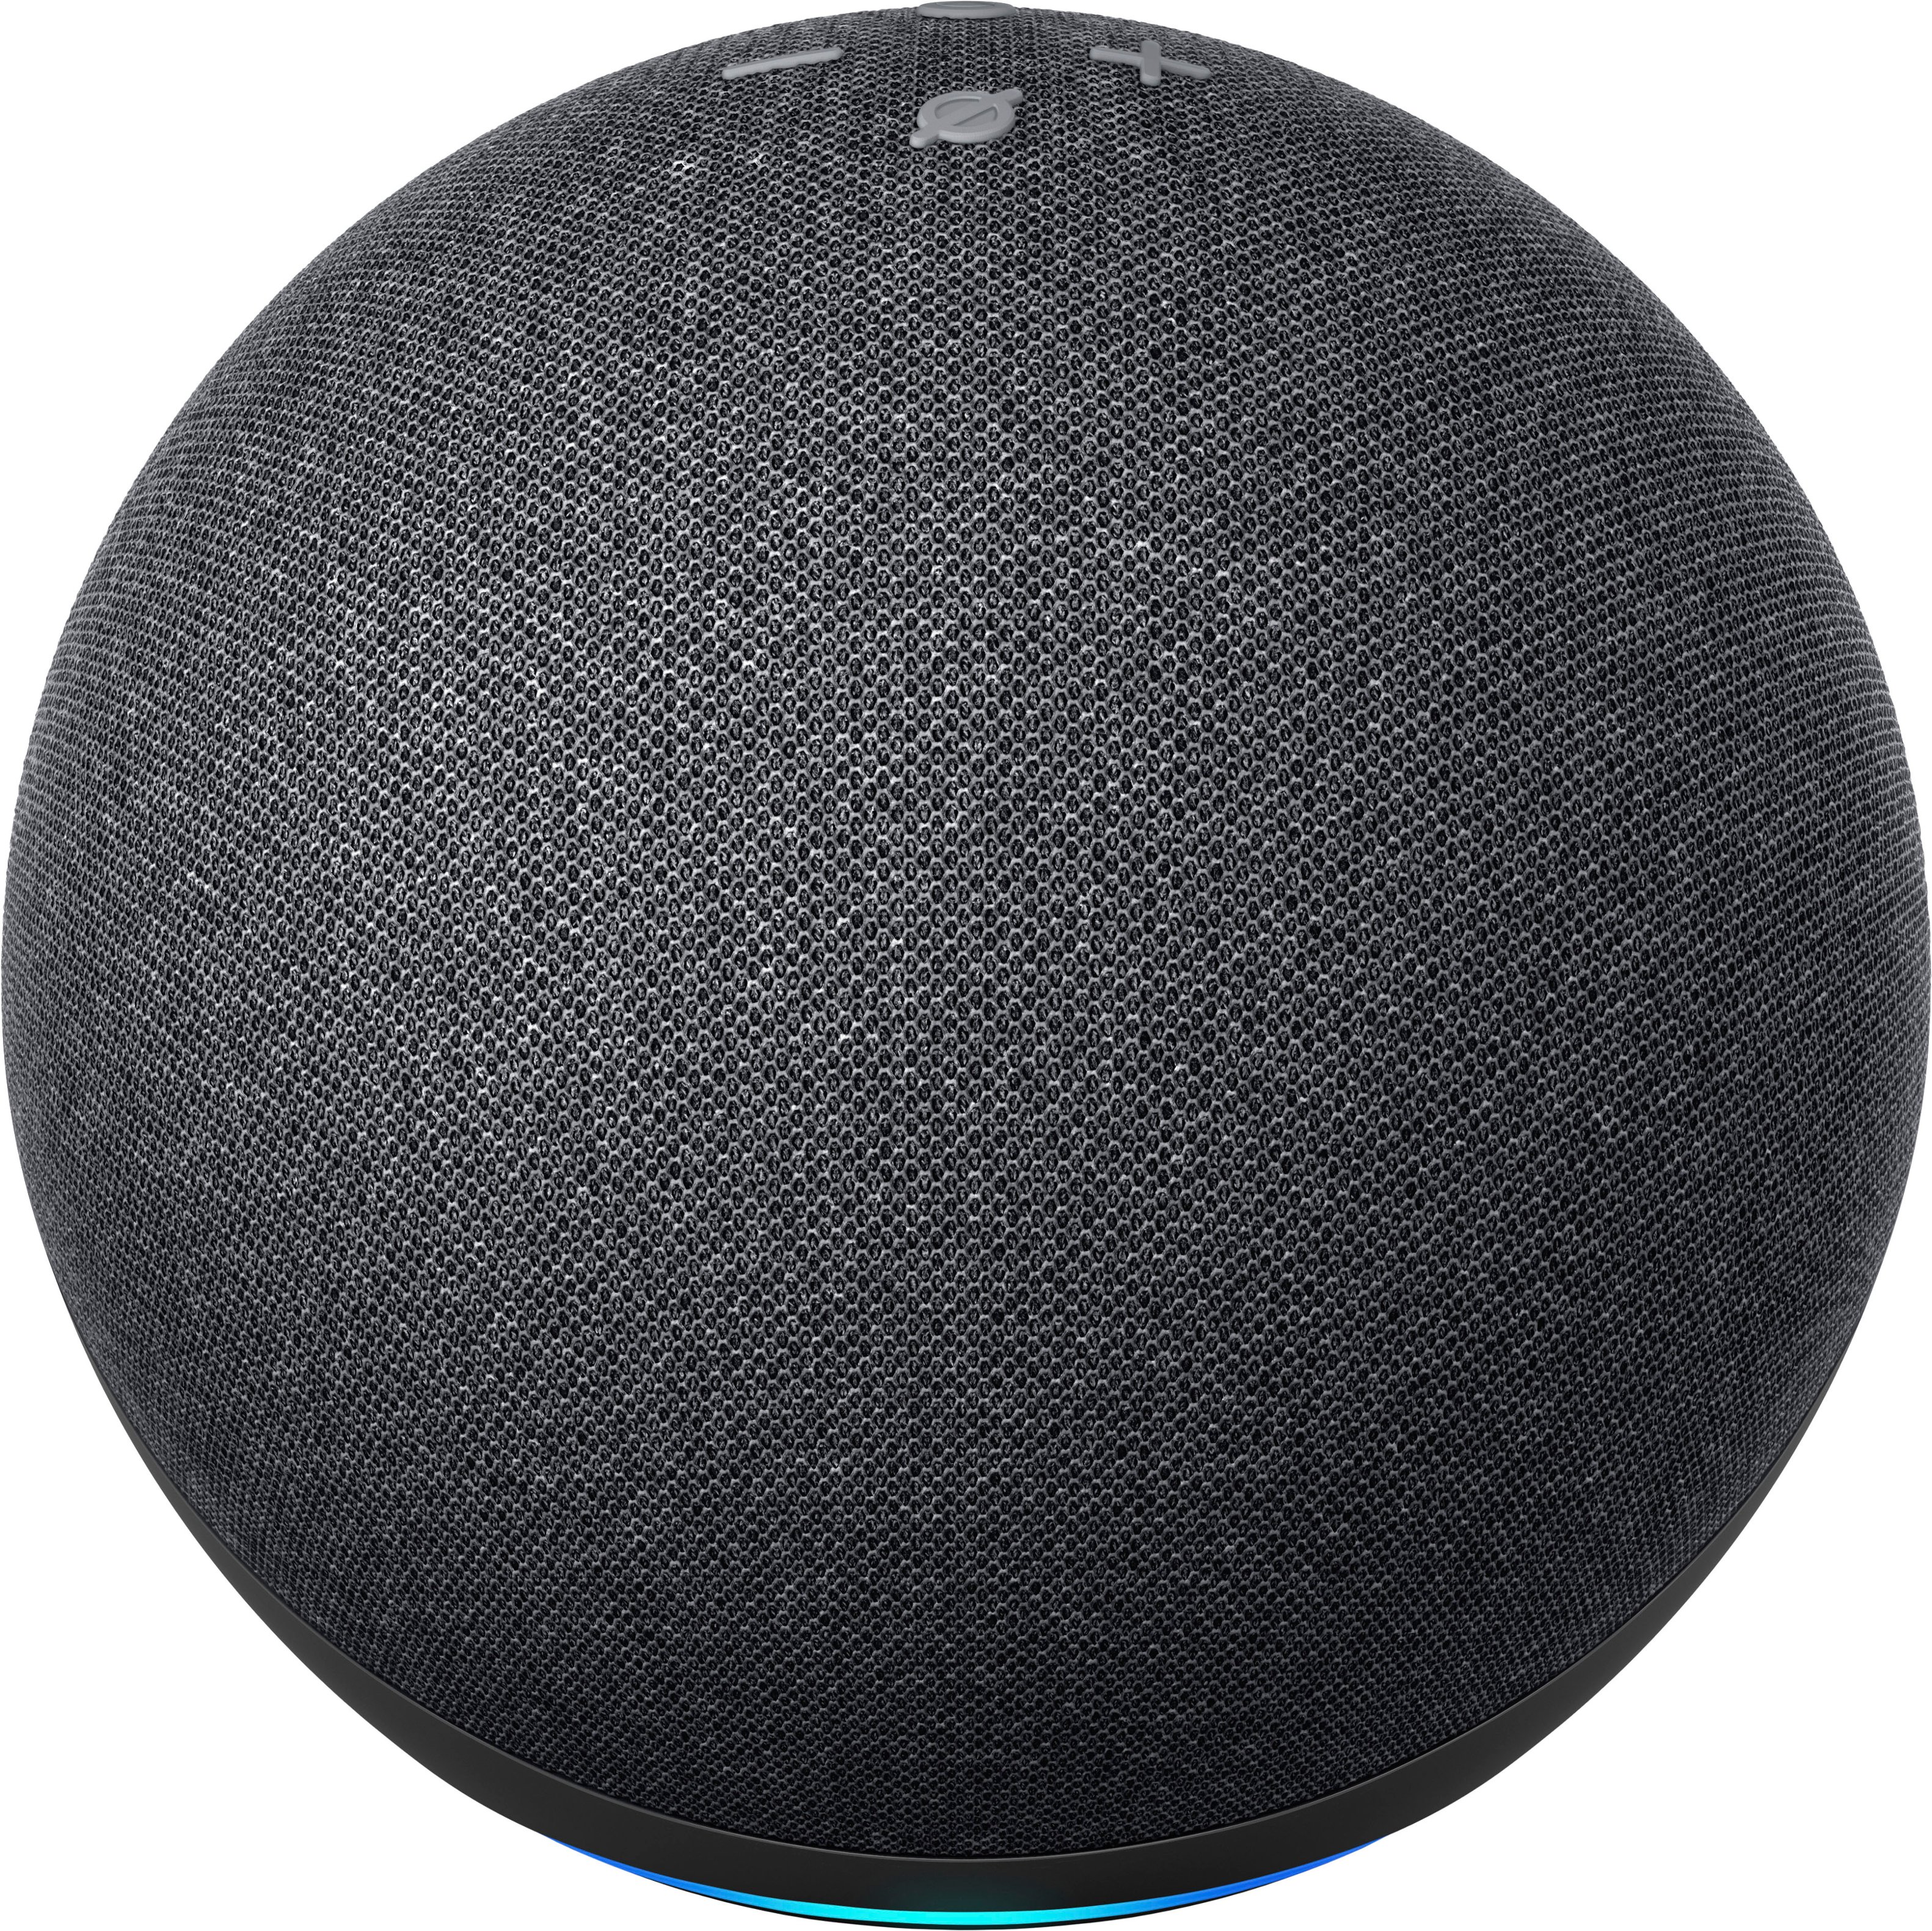 Amazon Echo Dot 4th Gen Smart Speaker With Alexa Charcoal B07xj8c8f5 Best Buy